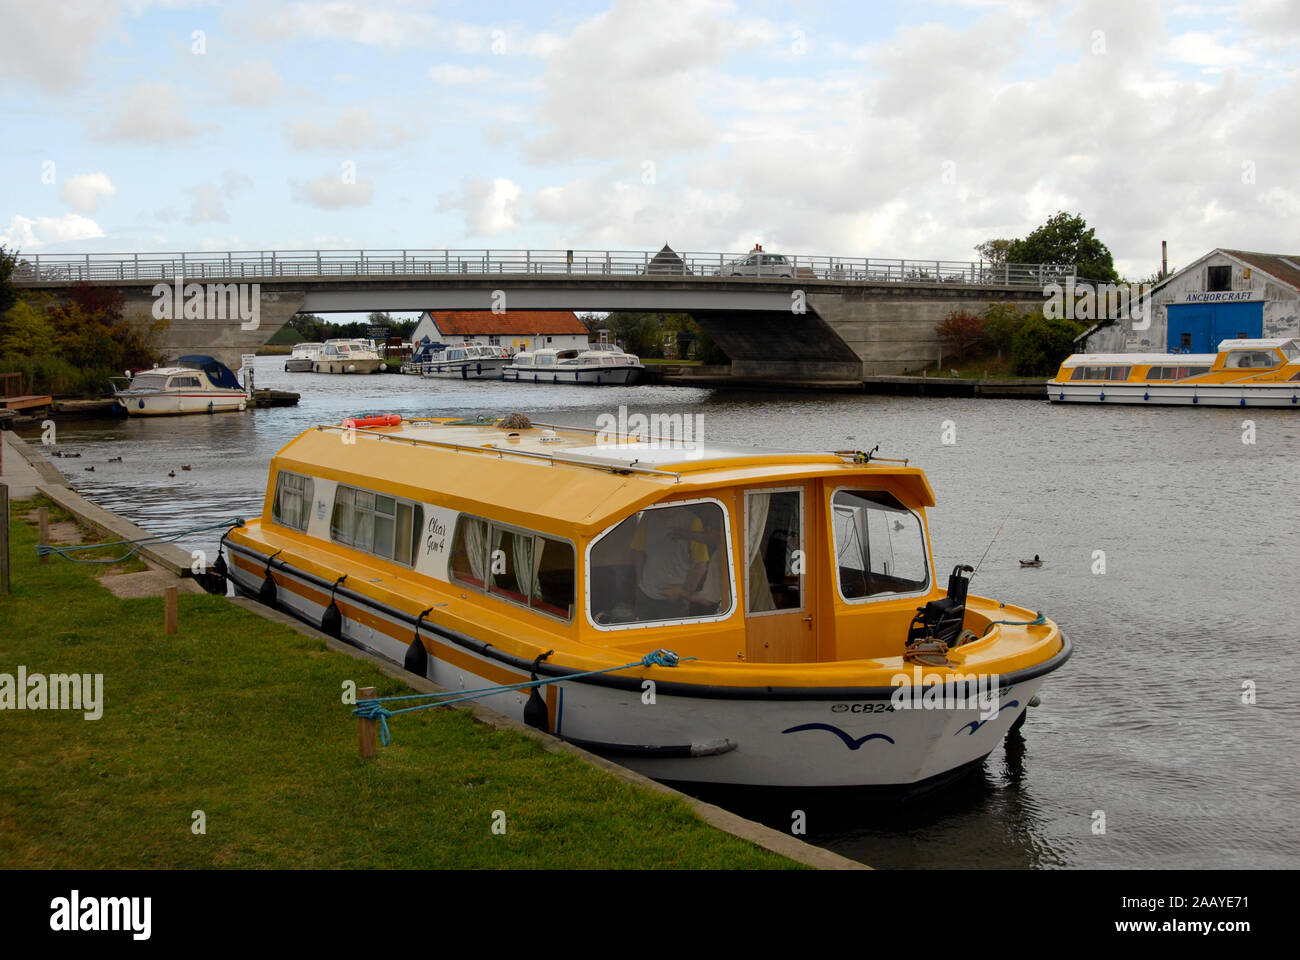 Motor Cruiser amarré par Acle pont sur la rivière Bure, Norfolk Broads, Angleterre Banque D'Images